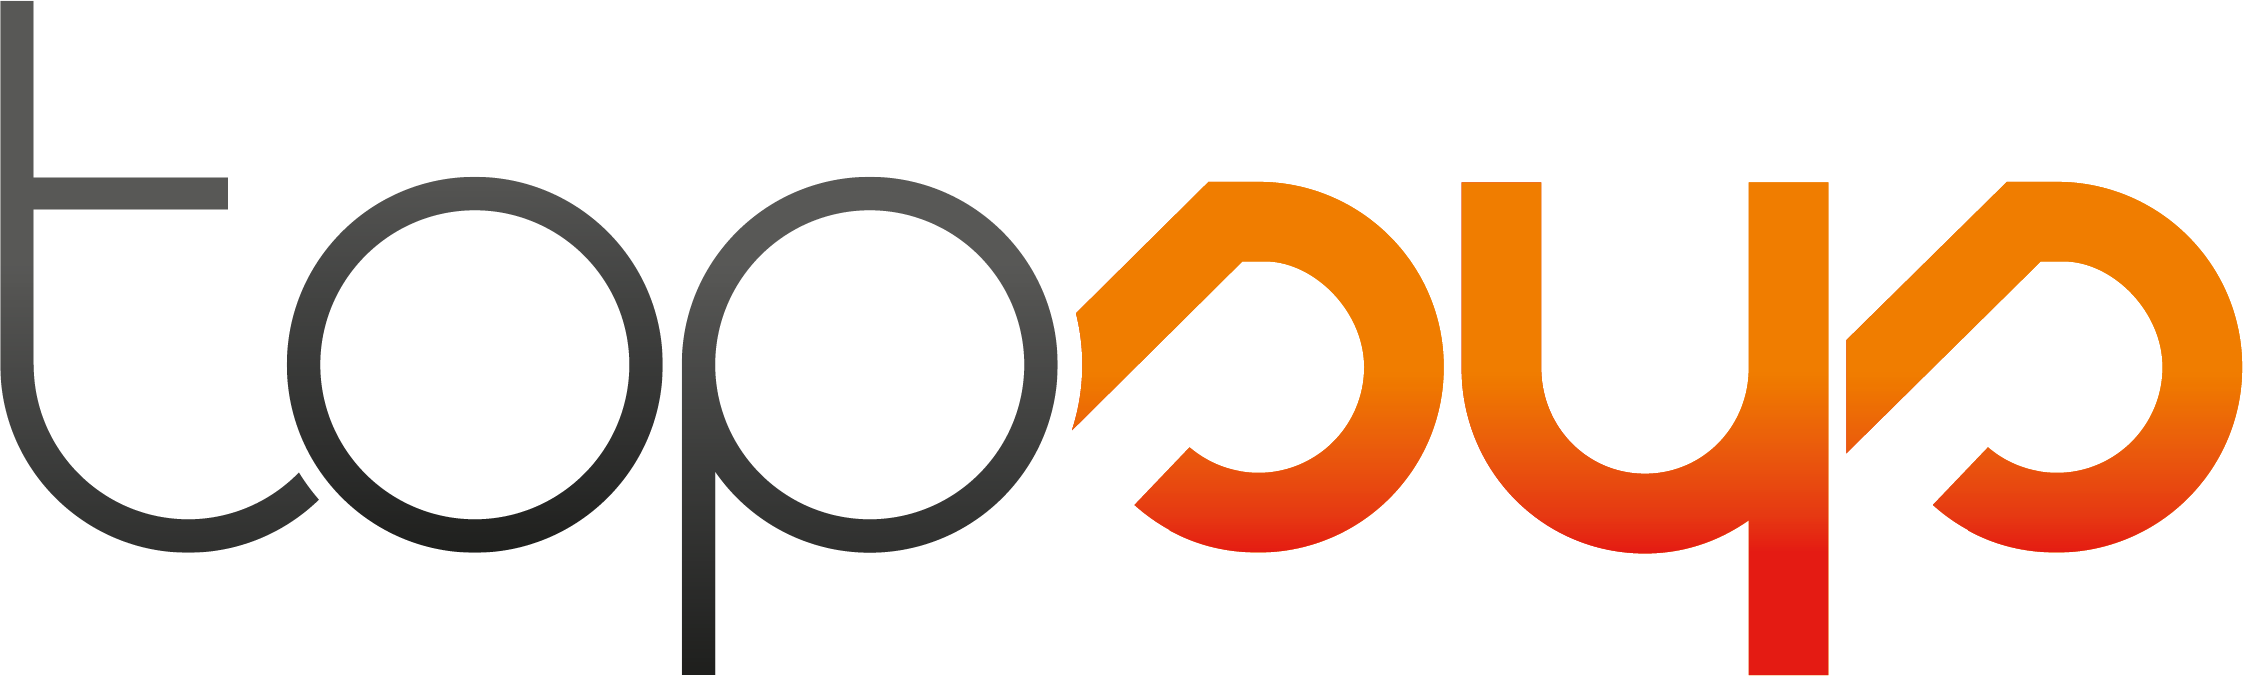 Logo_topsys_2020_seul-01vf